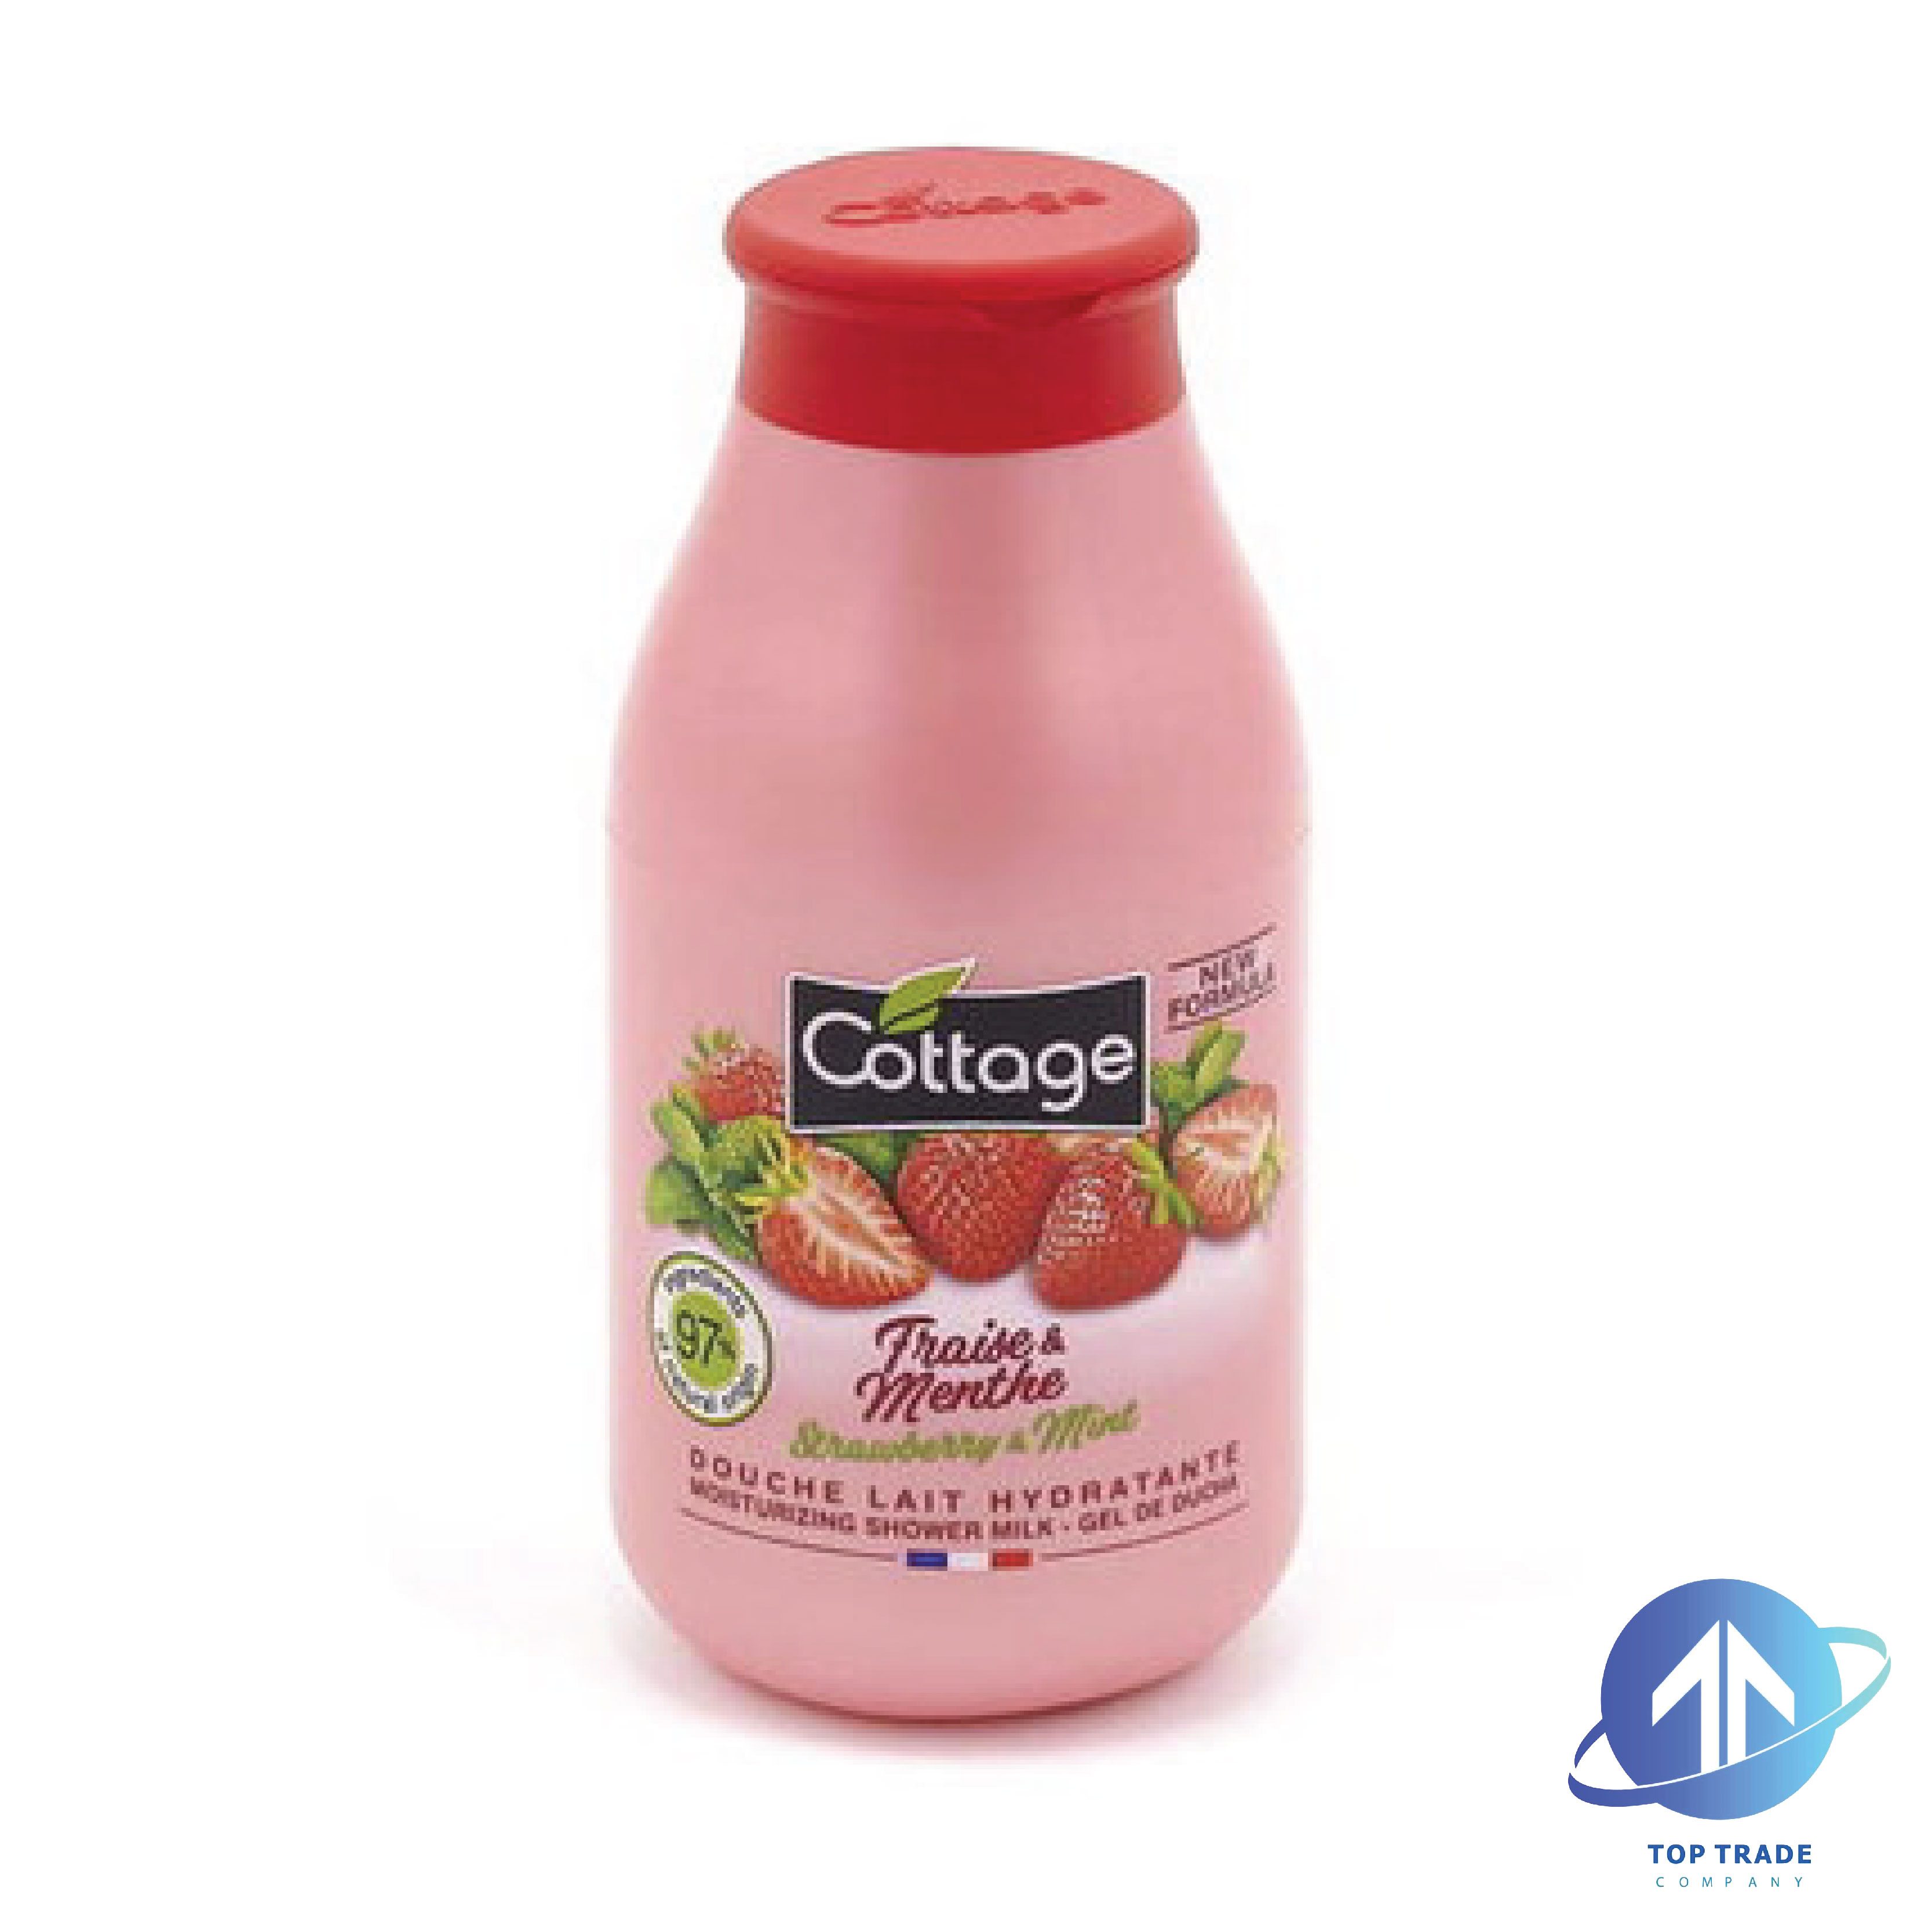 Cottage shower milk Strawberry & Mint 250ml